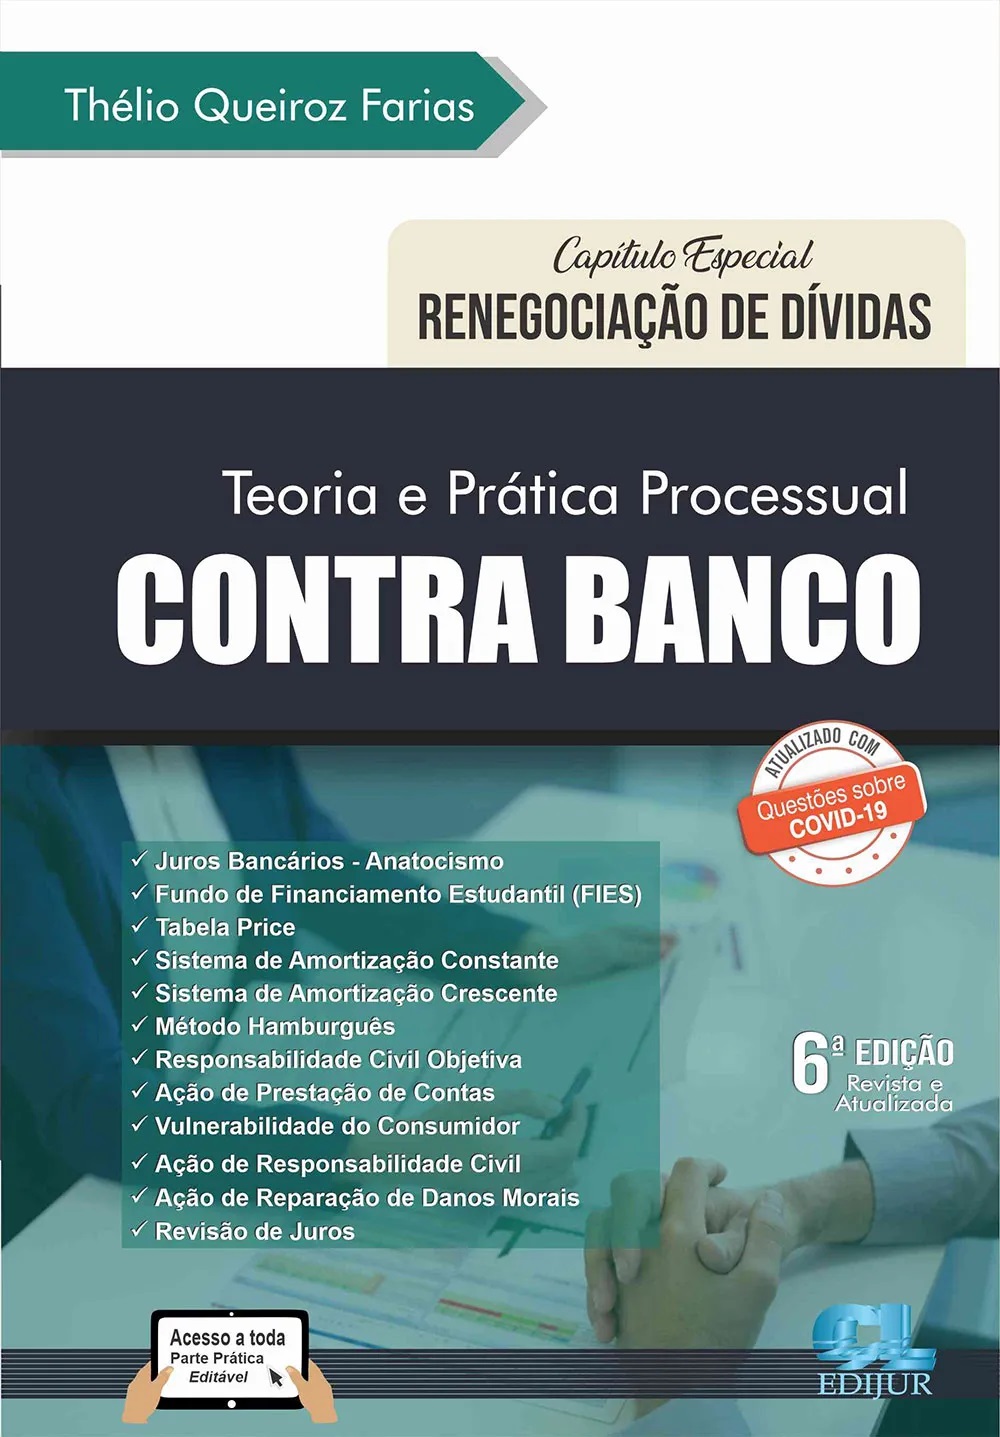 Teoria e prática processual contra banco 6ª edição